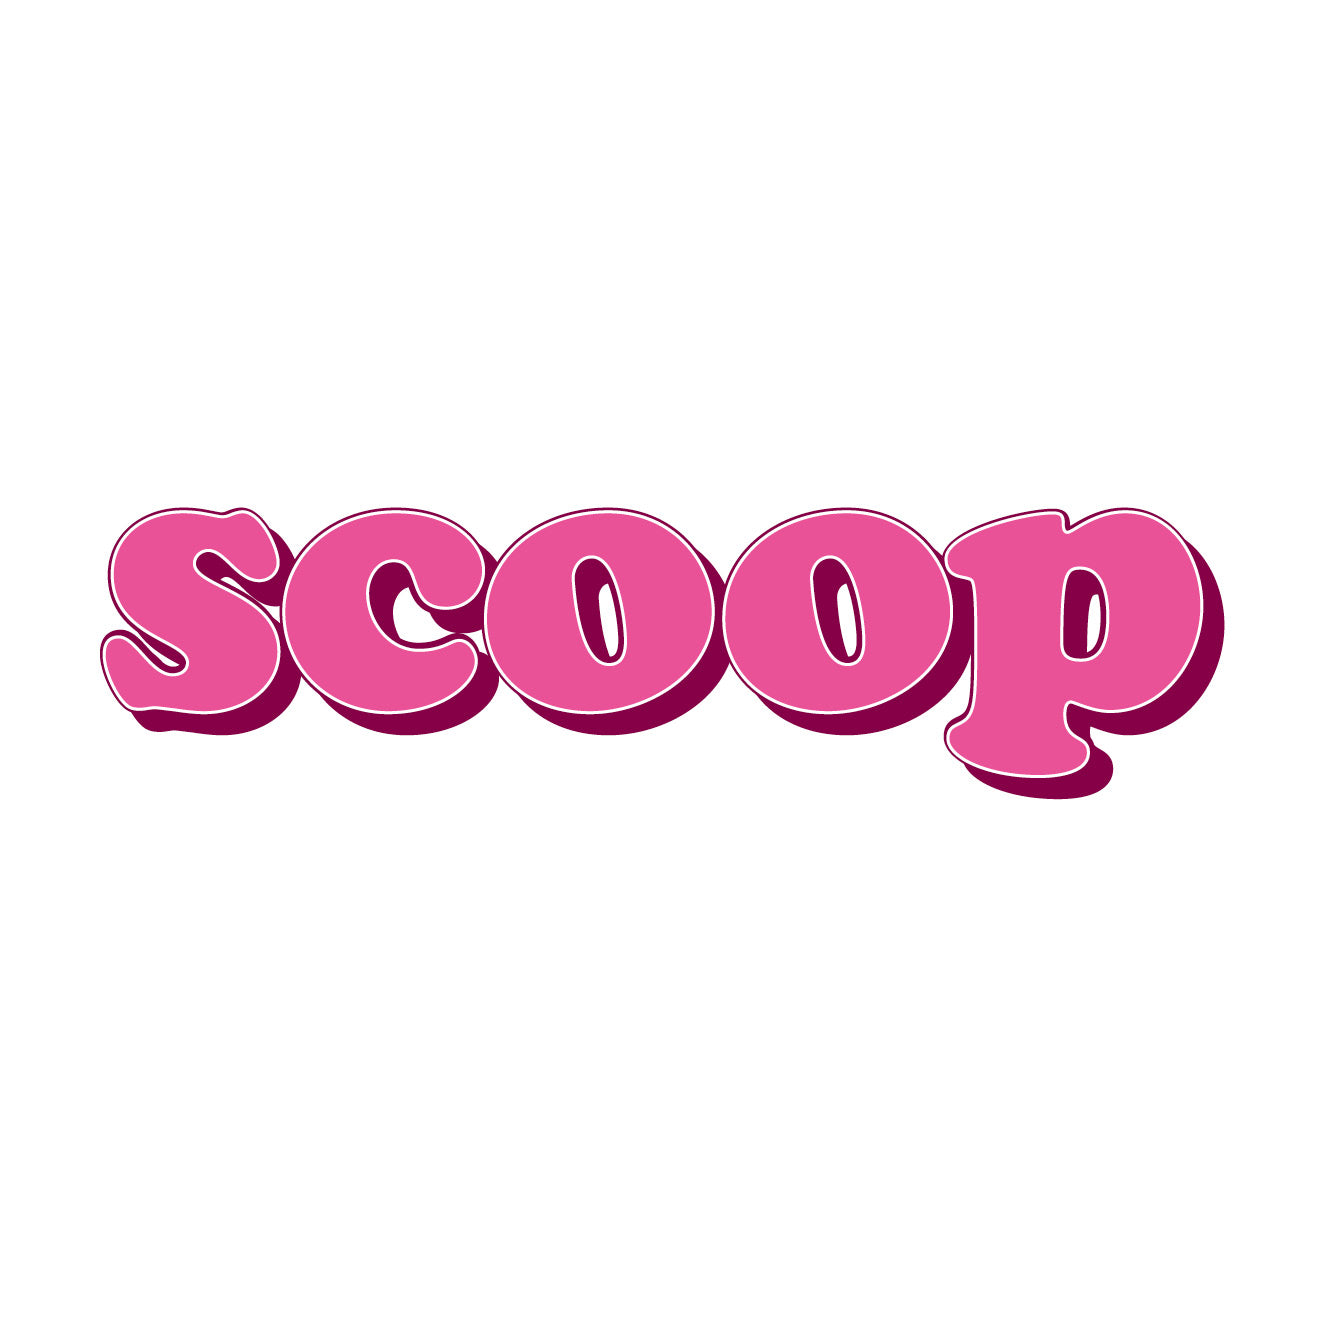 Scoop: Irish Food Stories